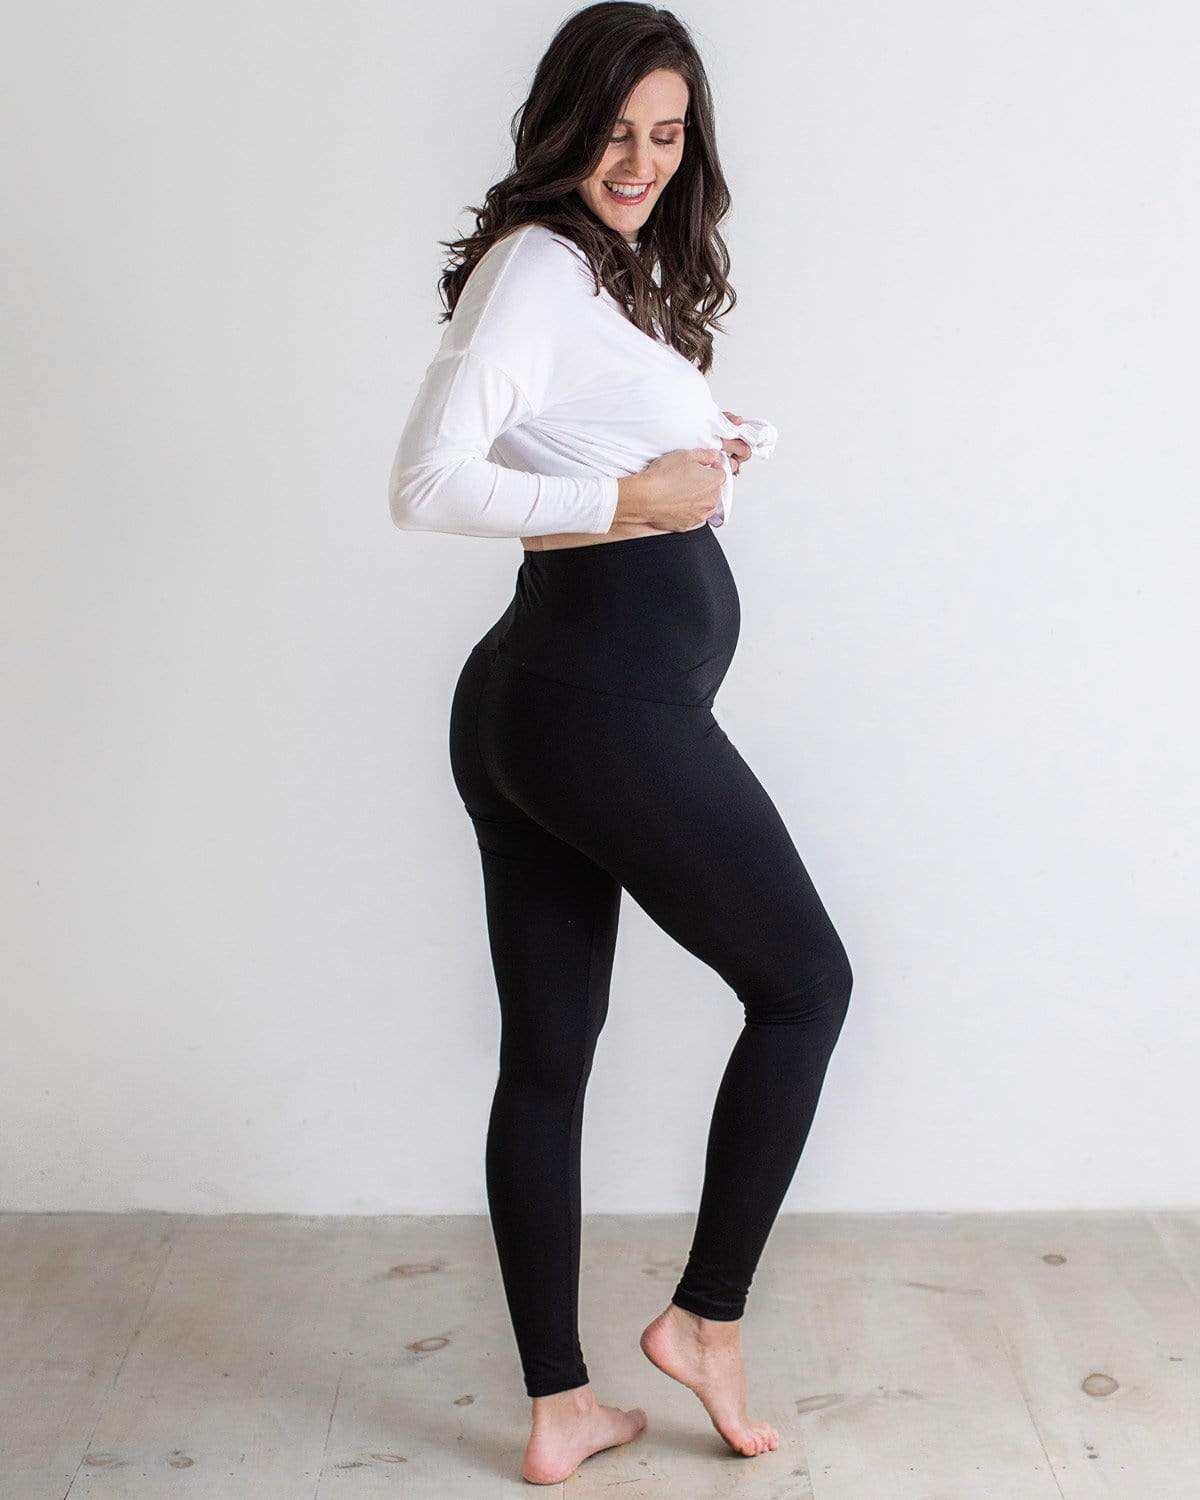 Leggings Depot Women's Maternity Leggings Over The Belly Pregnancy